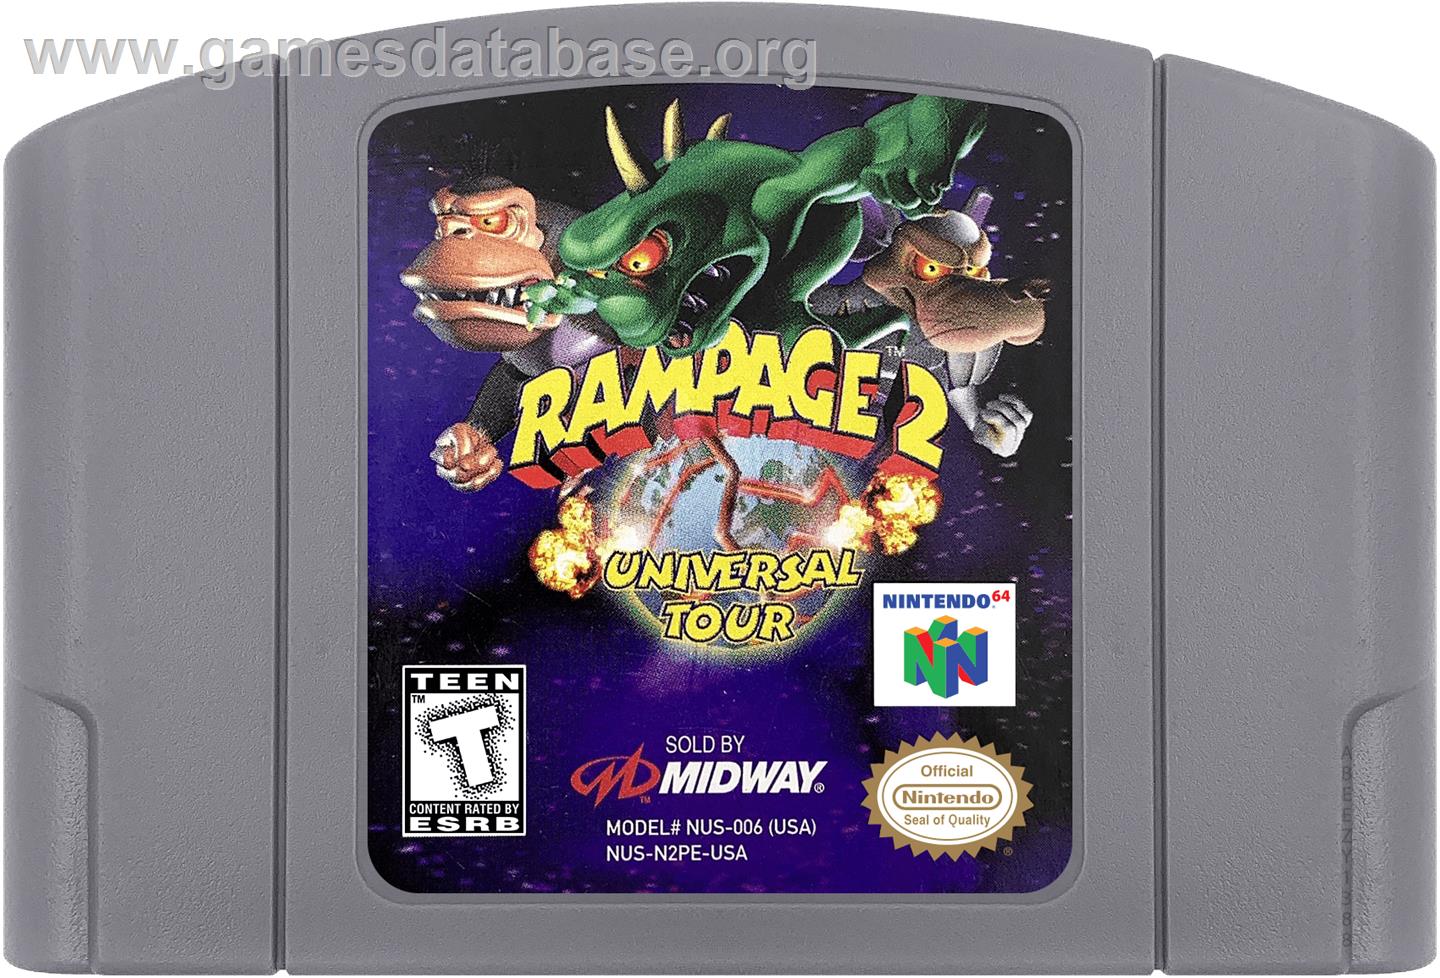 Rampage: Universal Tour - Nintendo N64 - Artwork - Cartridge